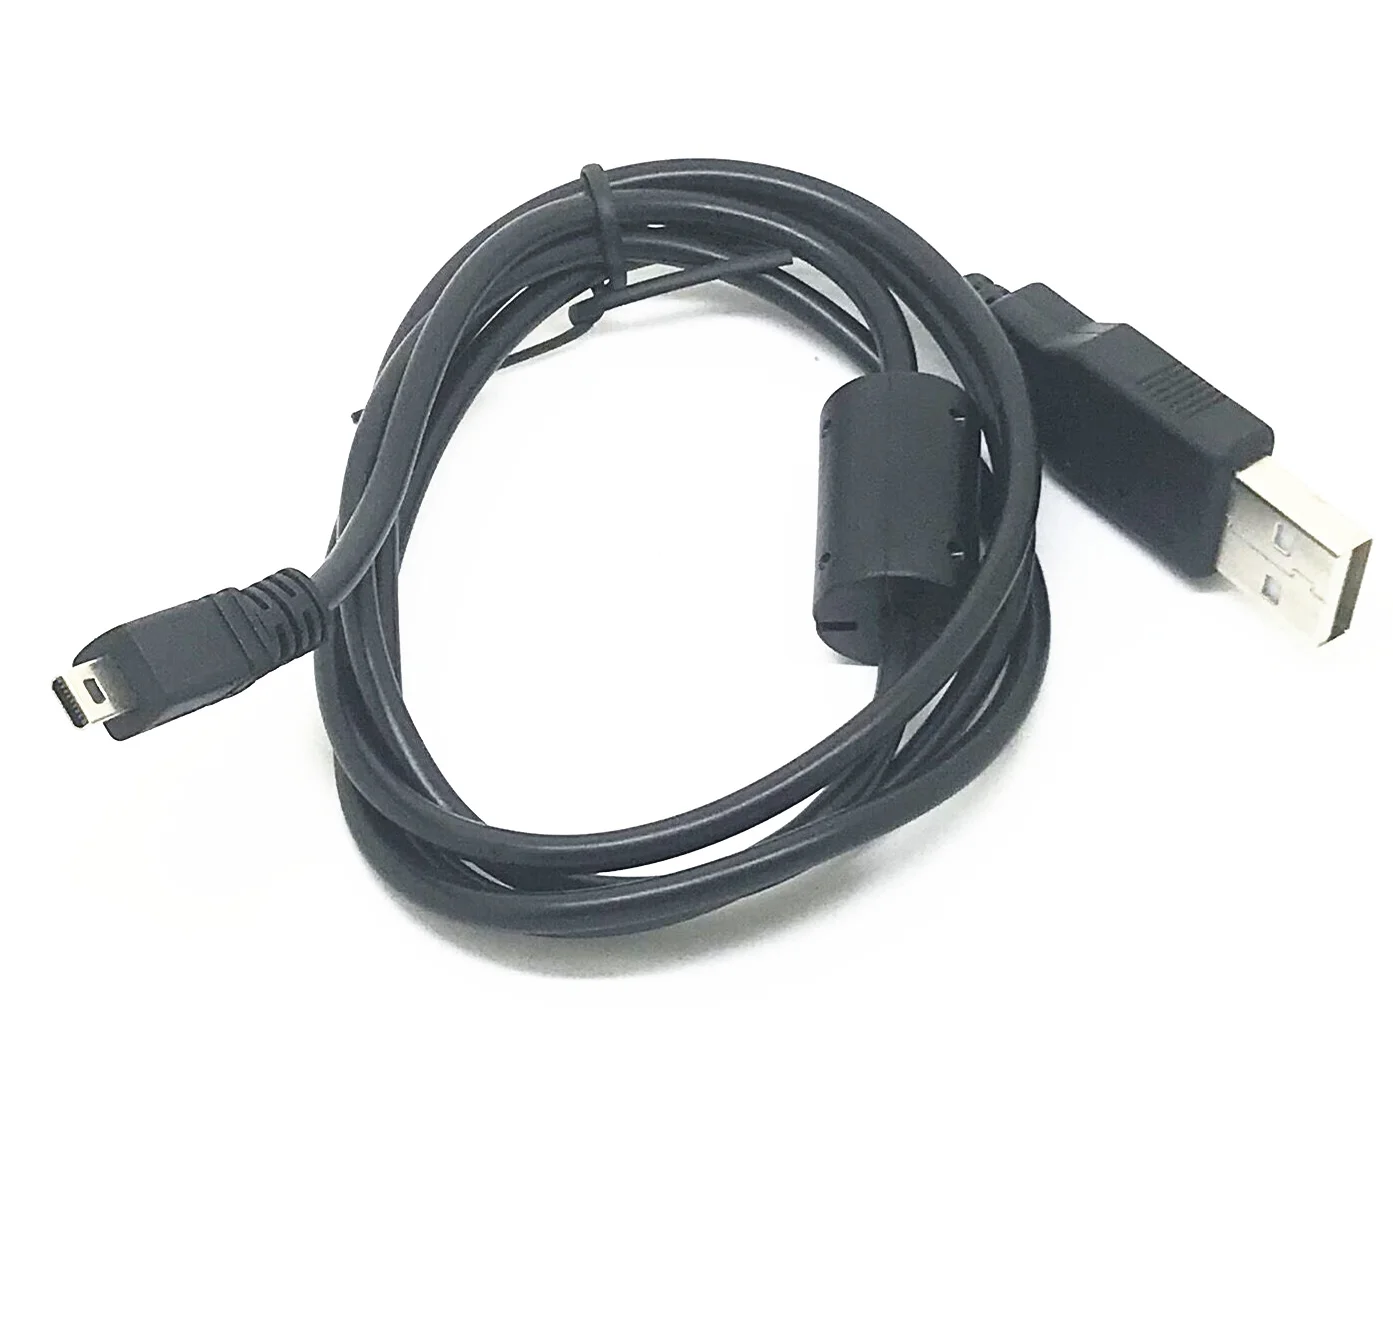 USB кабель для синхронизации данных и зарядки SAMSUNG NX5 NX10 NX11 NX100 бесплатная